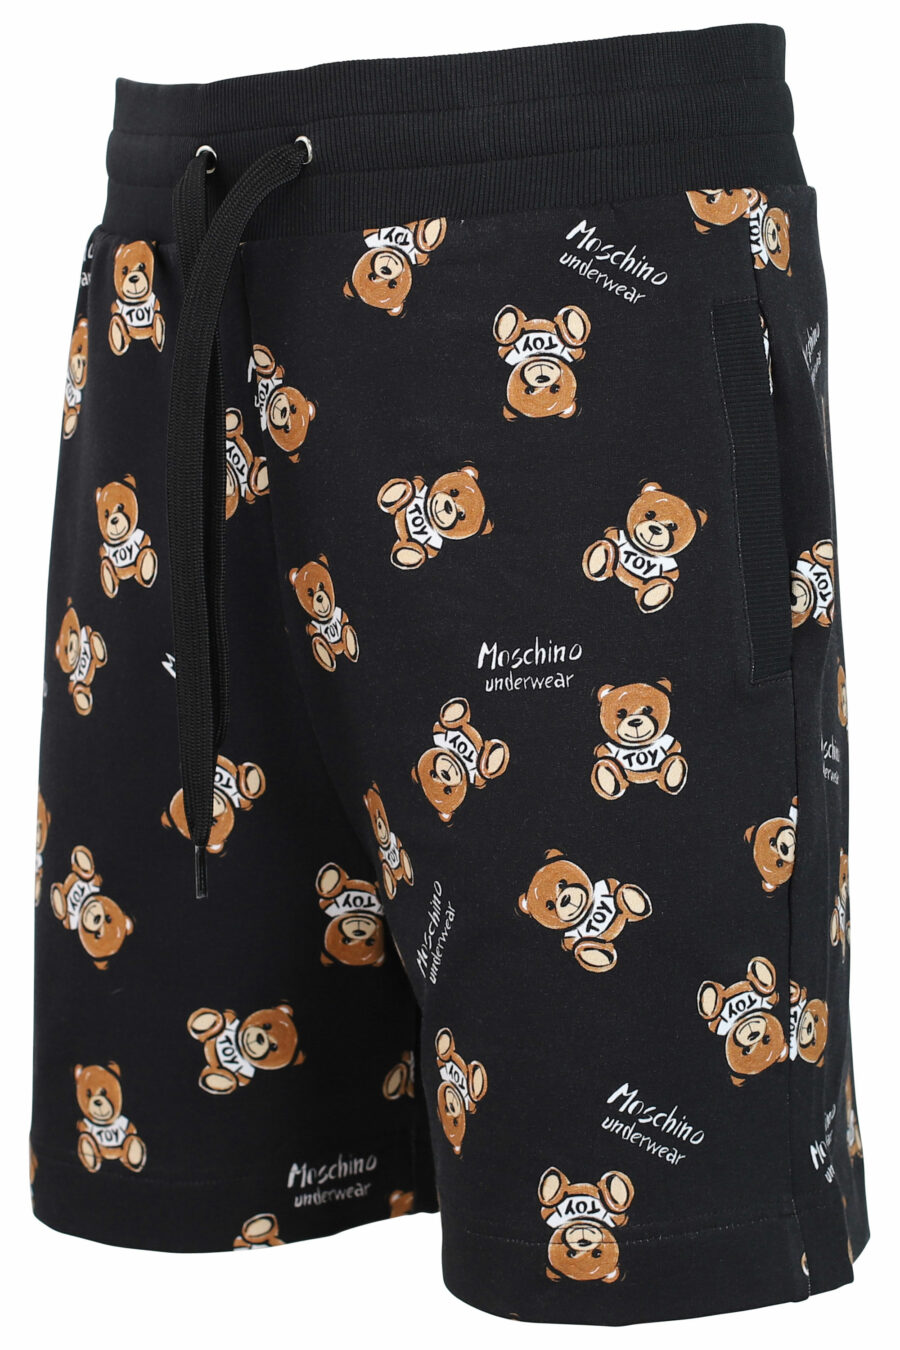 Pantalón de chándal corto negro con oso "all over logo" - IMG 0360